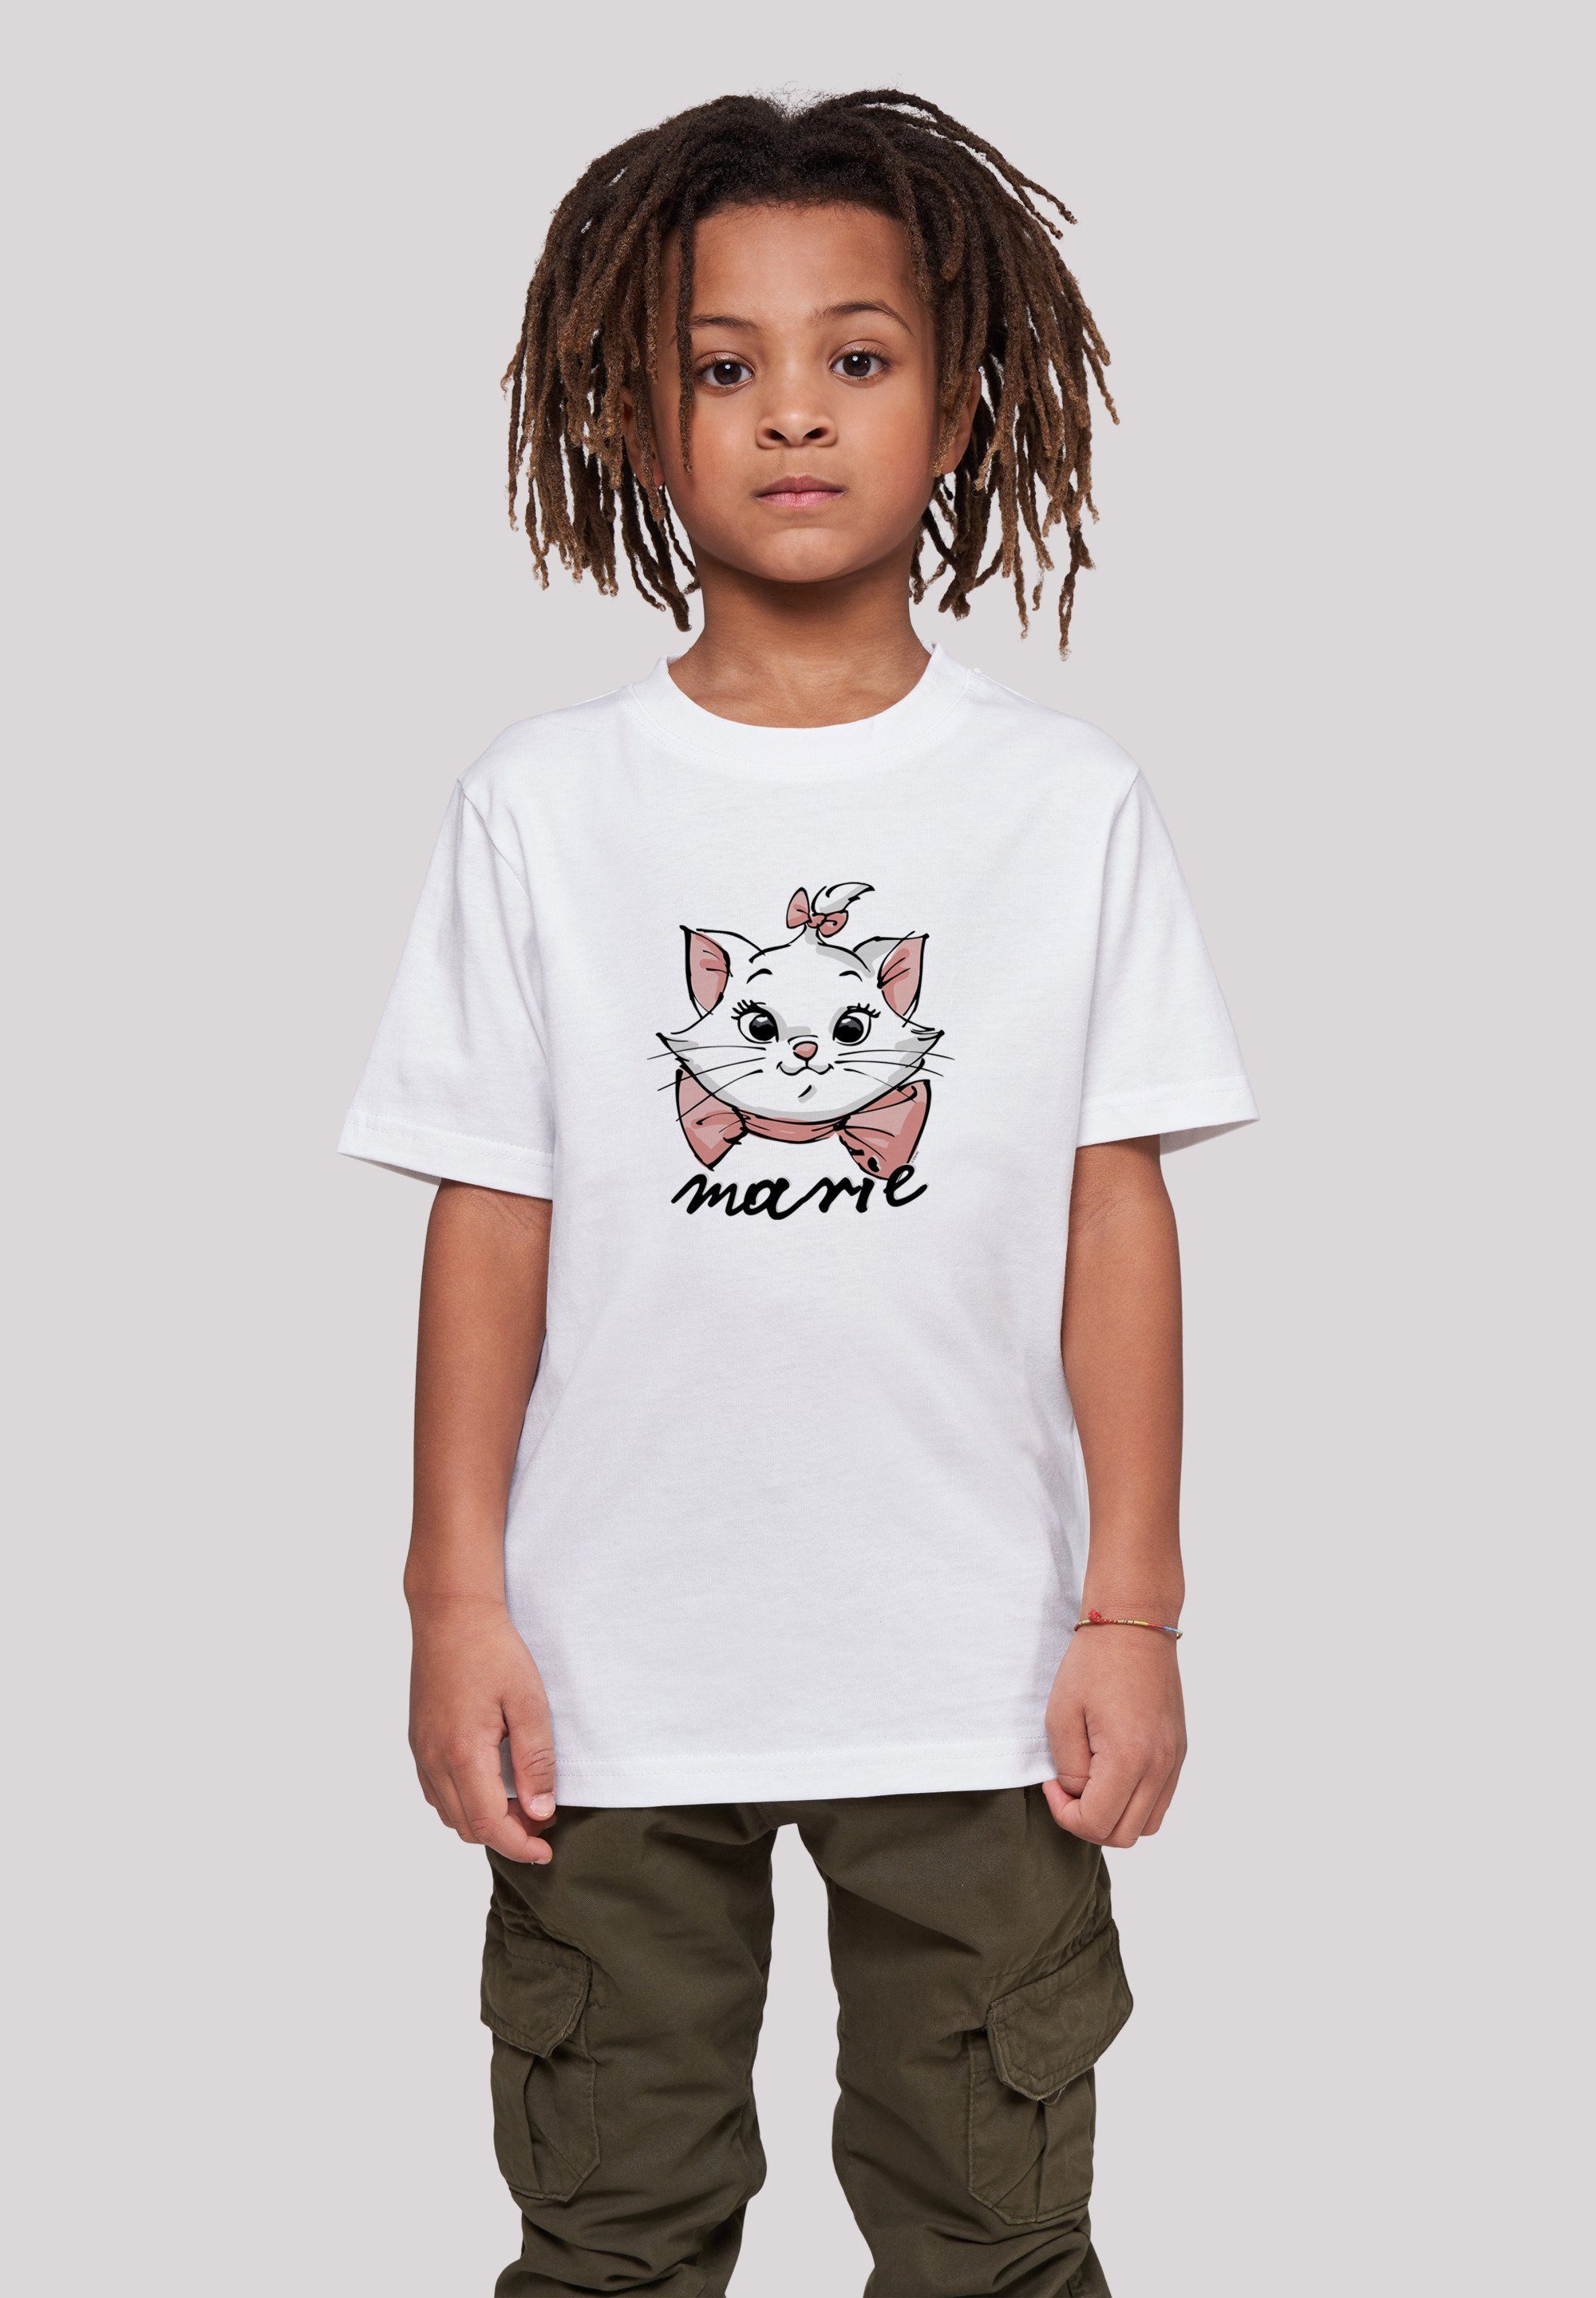 F4NT4STIC Face Unisex The T-Shirt Merch,Jungen,Mädchen,Bedruckt Kinder,Premium Marie Disney Sketch Aristocats